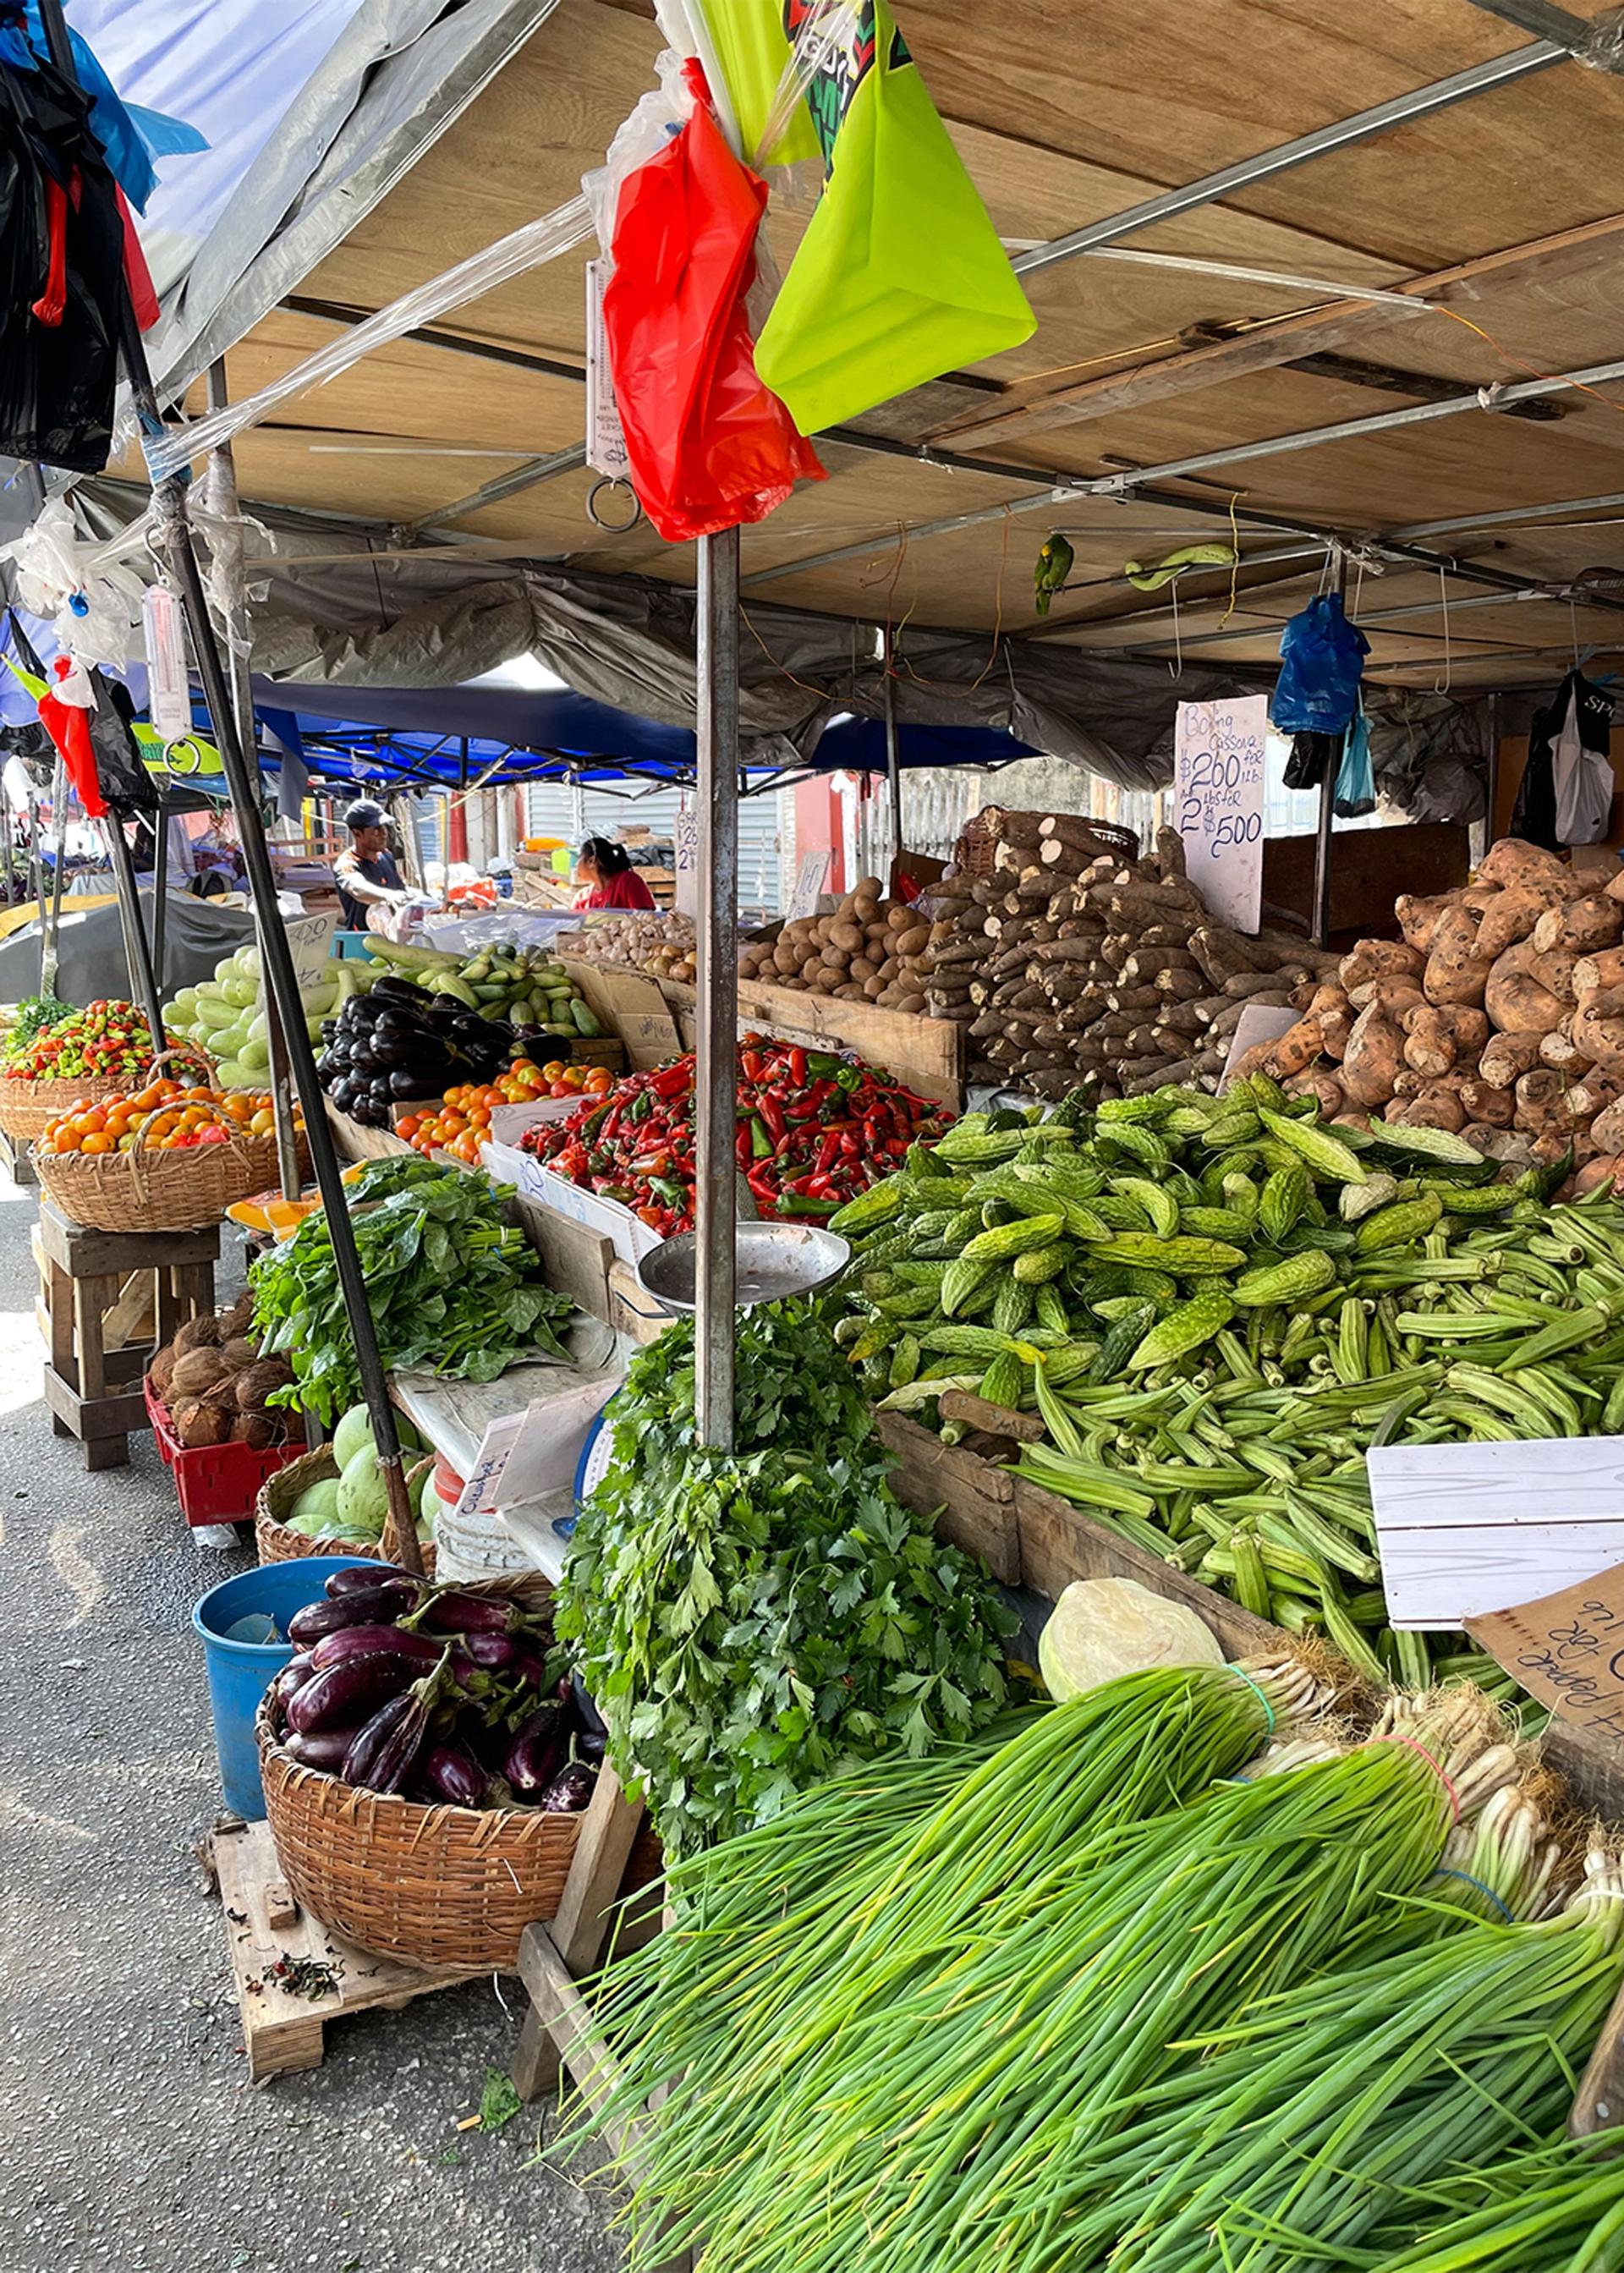 The Stabroek Market is a farmers market in Georgetown, Guyana.